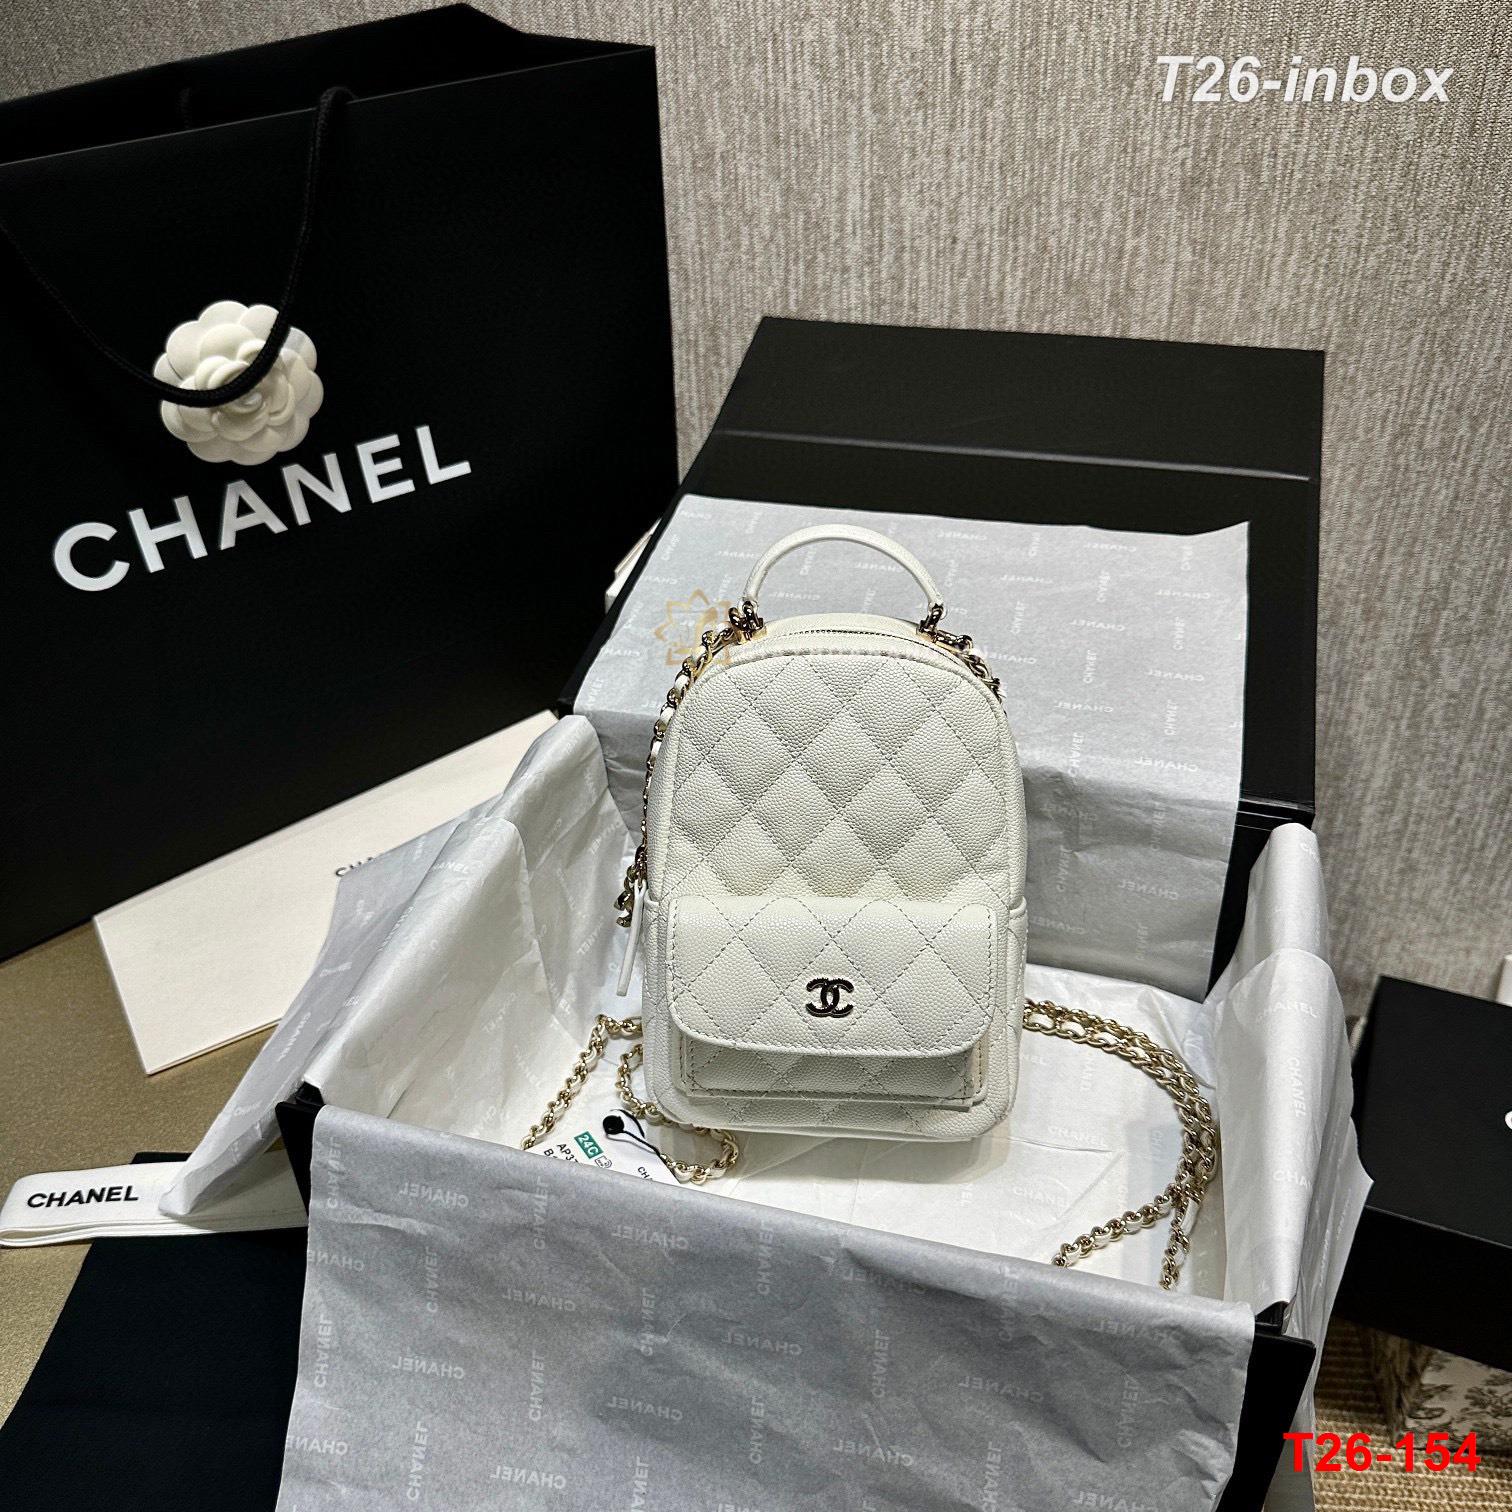 T26-154 Chanel túi siêu cấp